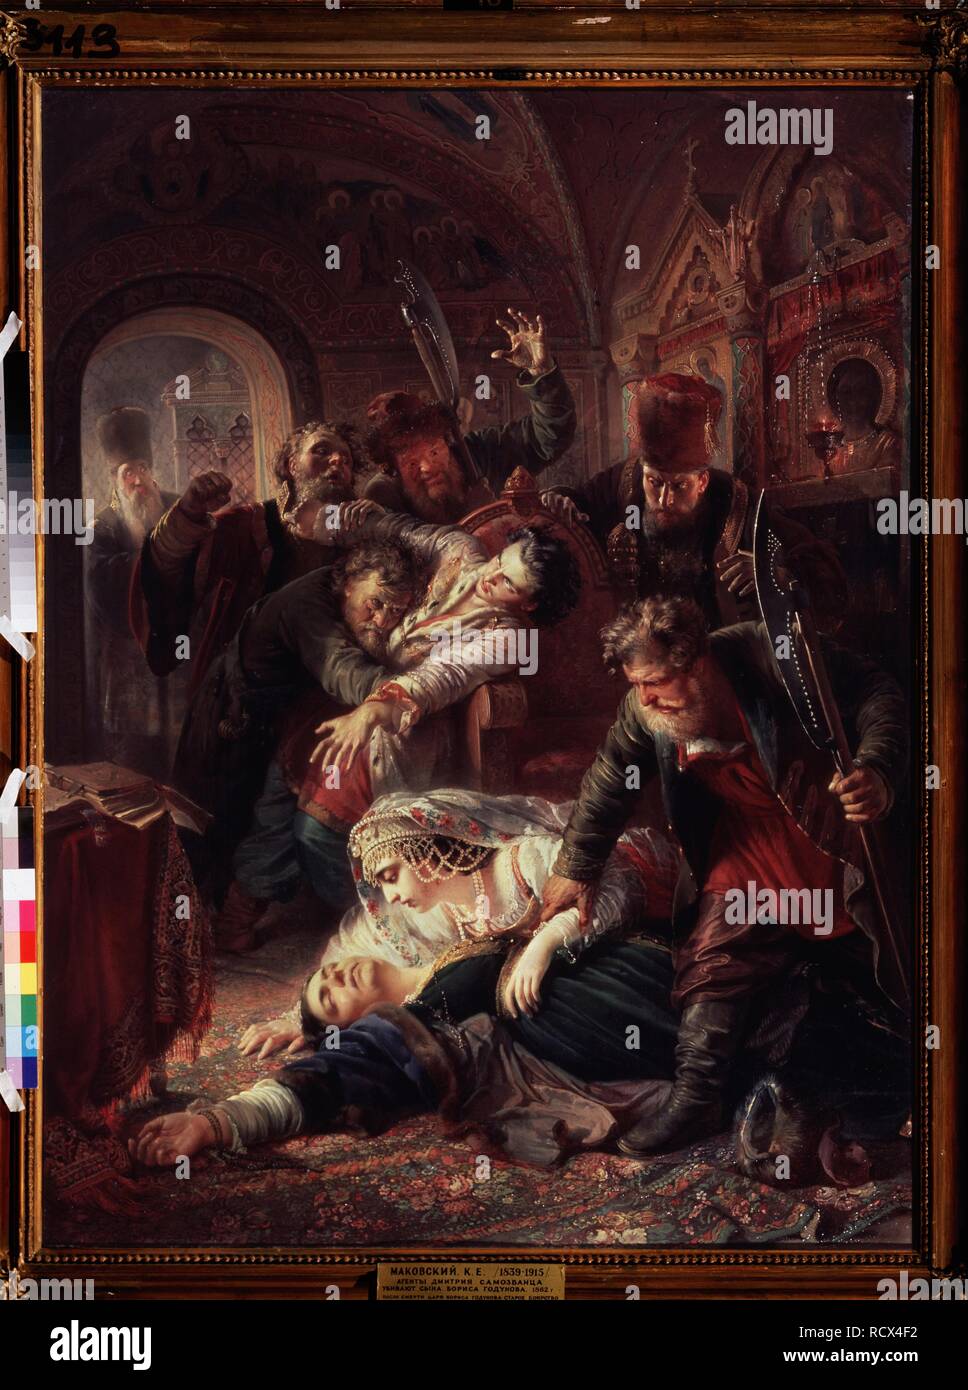 Gli agenti del falso Dmitry uccidere il figlio di Boris Godunov. Museo: Membro Galleria Tretyakov di Mosca. Autore: Makovsky, Konstantin Yegorovich. Foto Stock